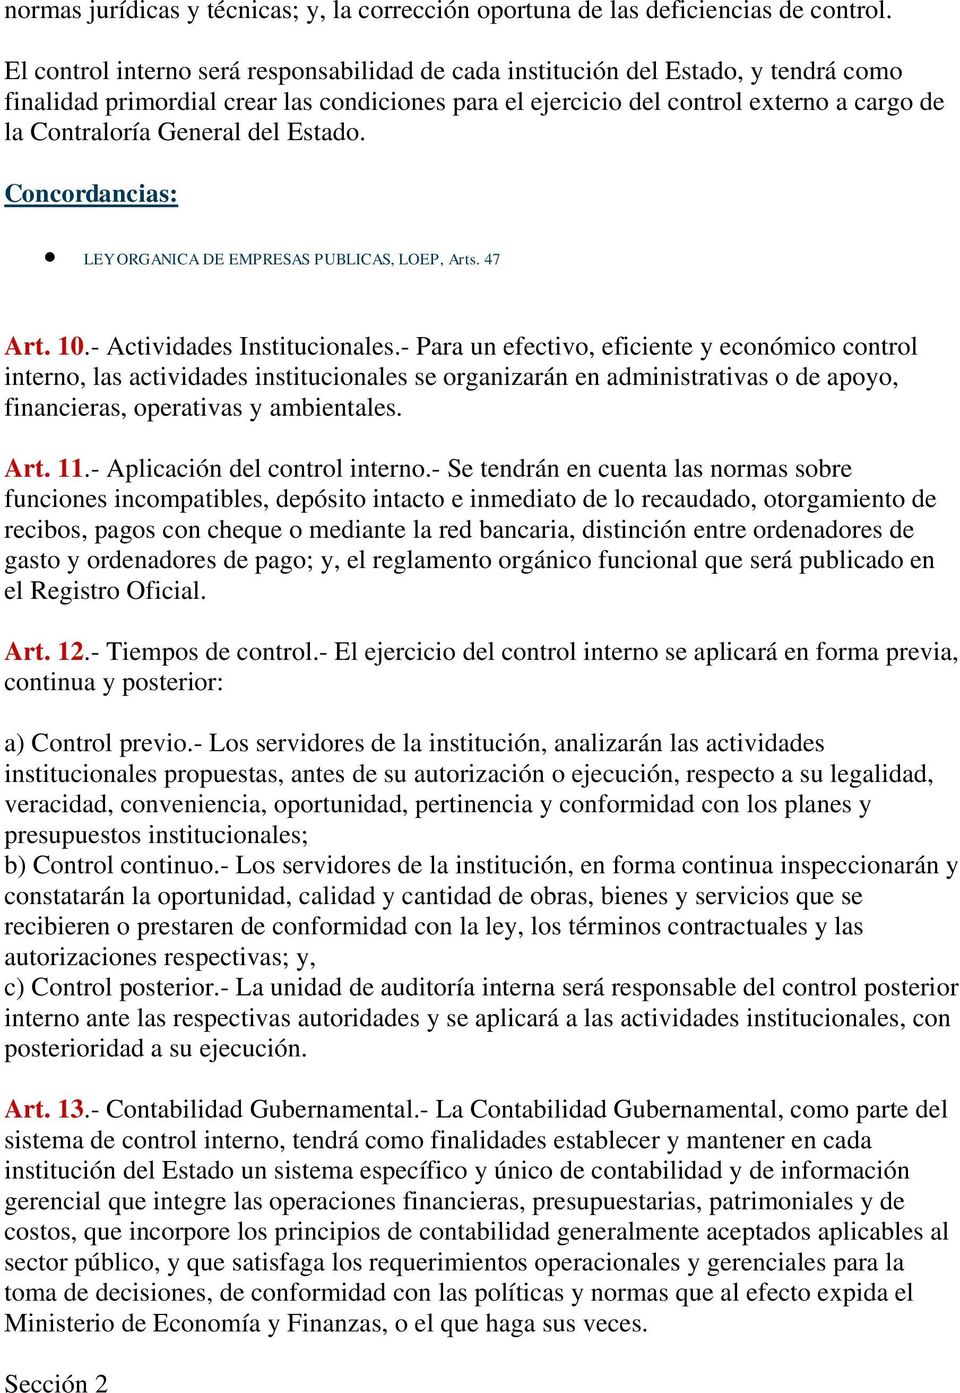 General del Estado. LEY ORGANICA DE EMPRESAS PUBLICAS, LOEP, Arts. 47 Art. 10.- Actividades Institucionales.